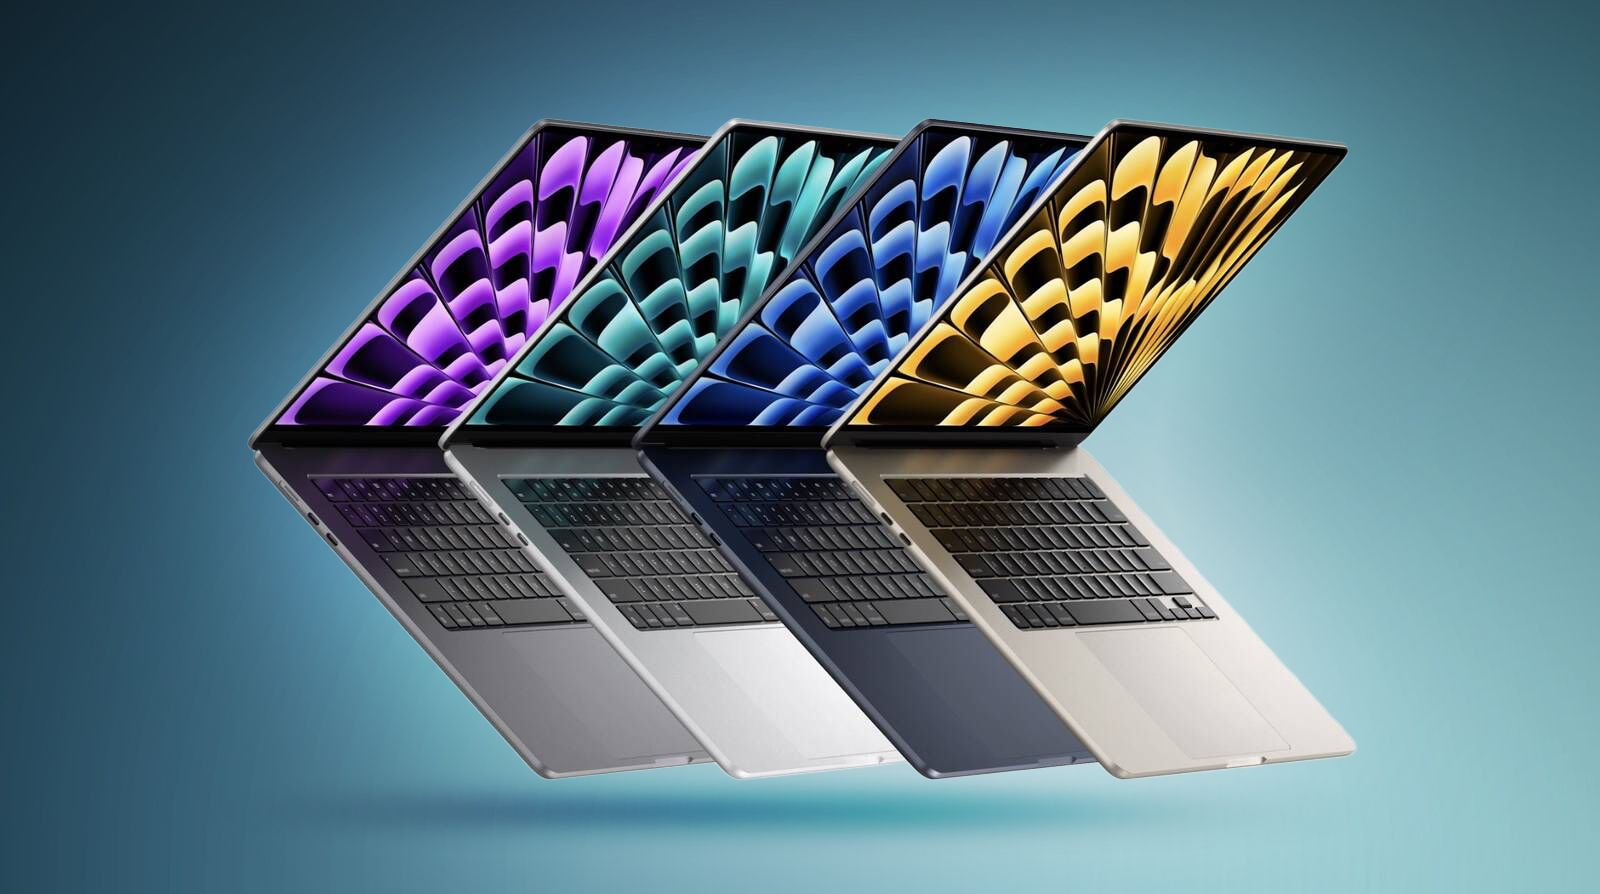 Ofertas: el nuevo MacBook Air de 15 pulgadas obtiene el primer descuento en Amazon, disponible desde $ 1,249.99